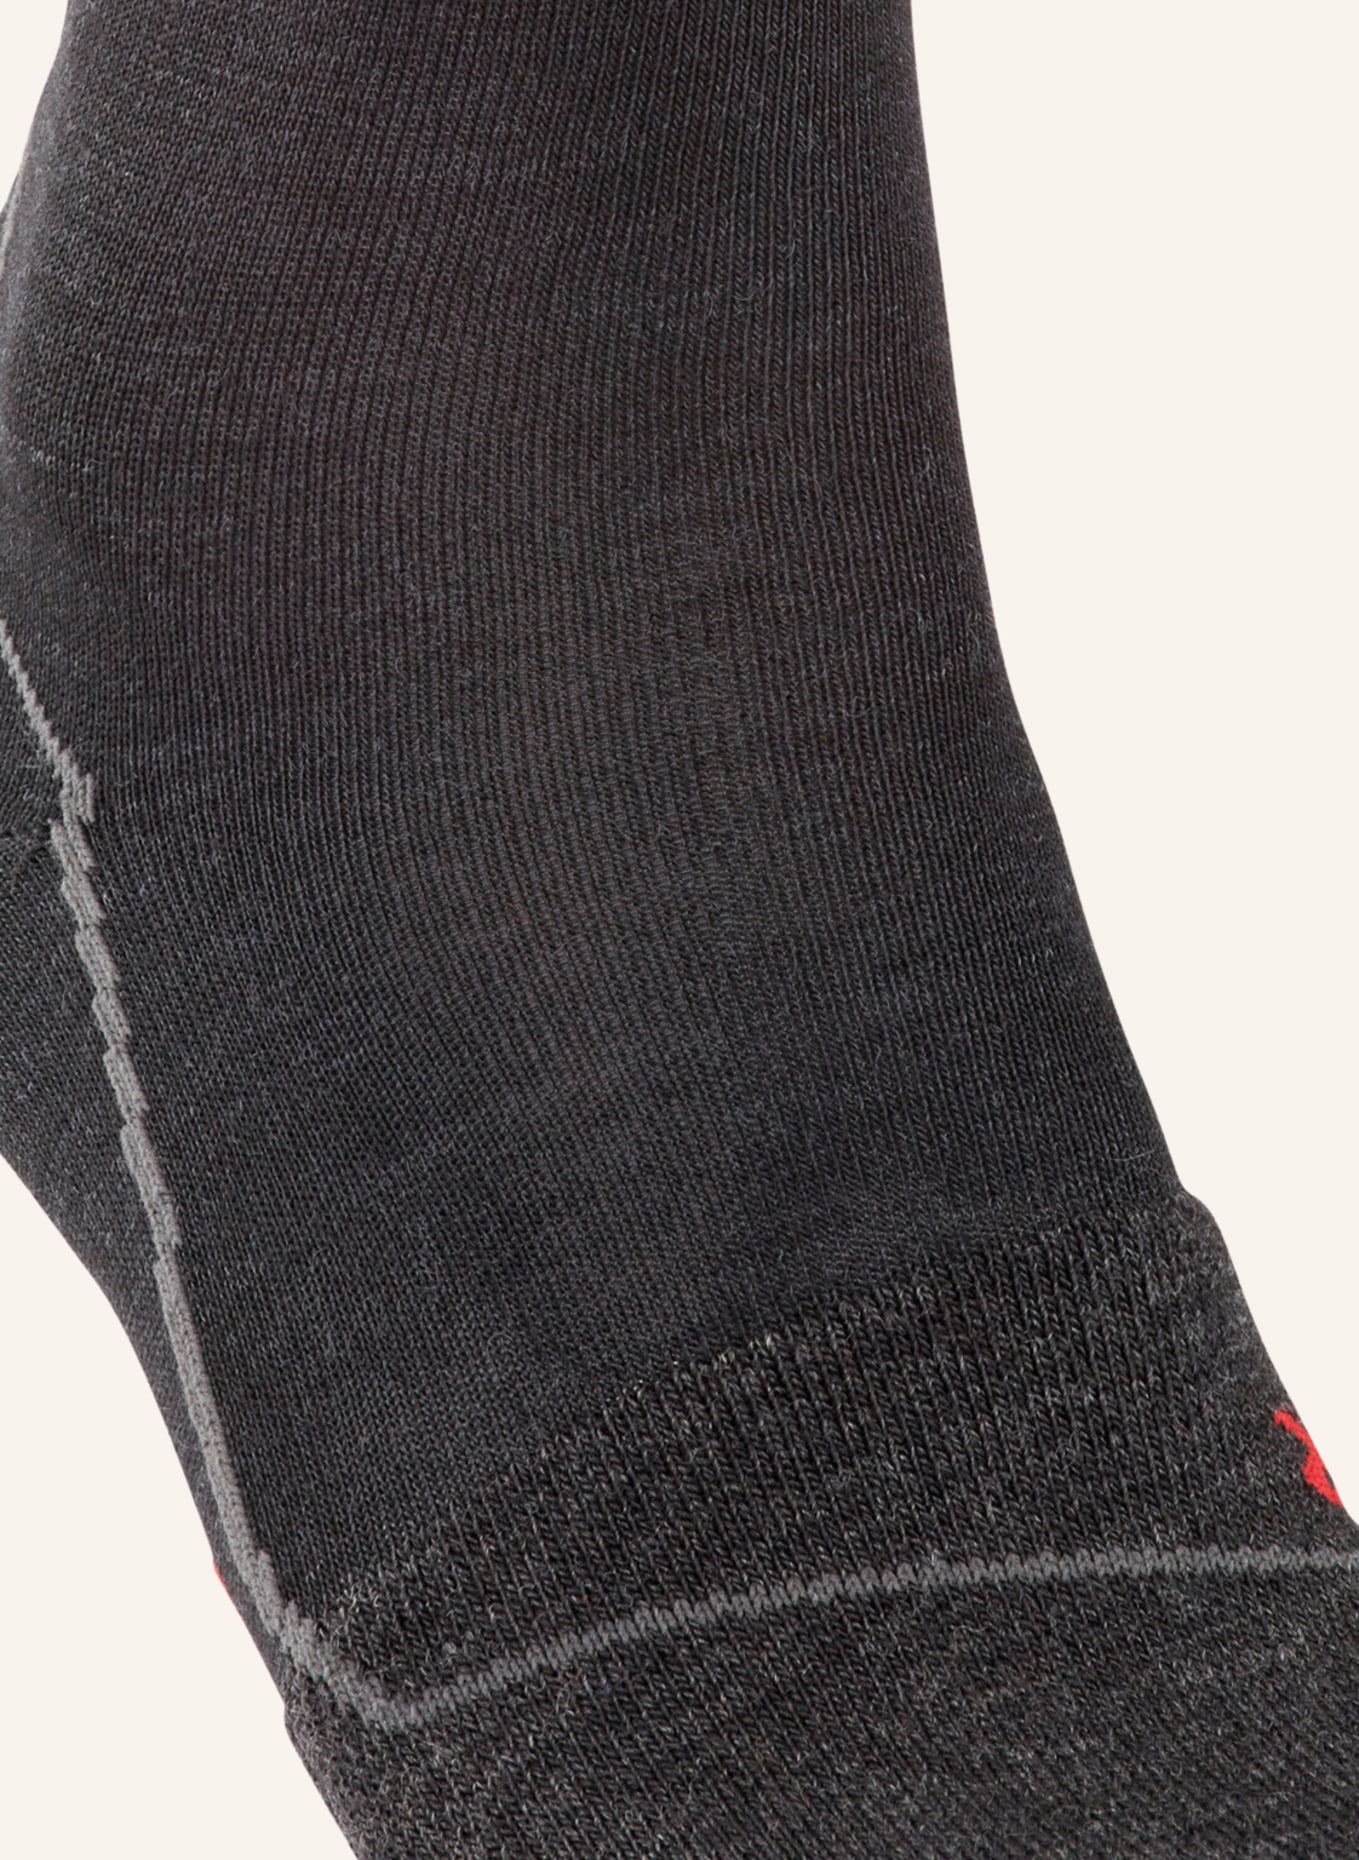 FALKE Sports socks BC, Color: 3010 BLACK-MIX (Image 3)